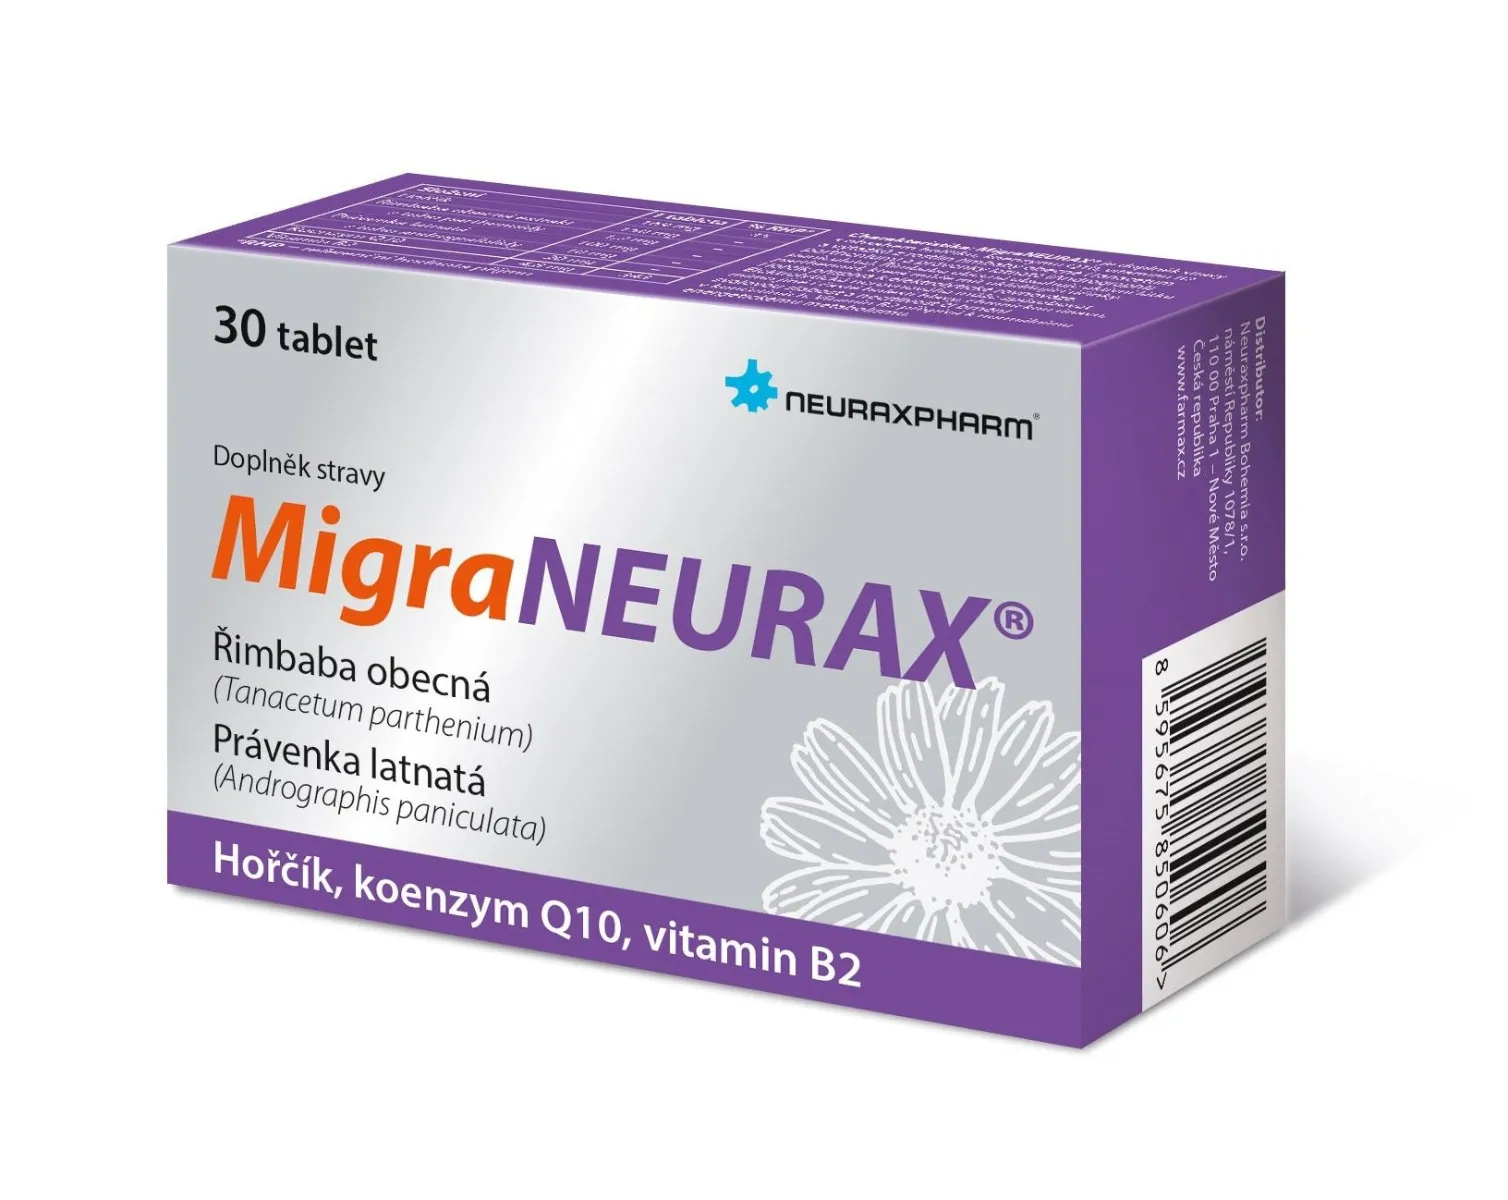 Neuraxpharm MigraNeurax 30 tablet